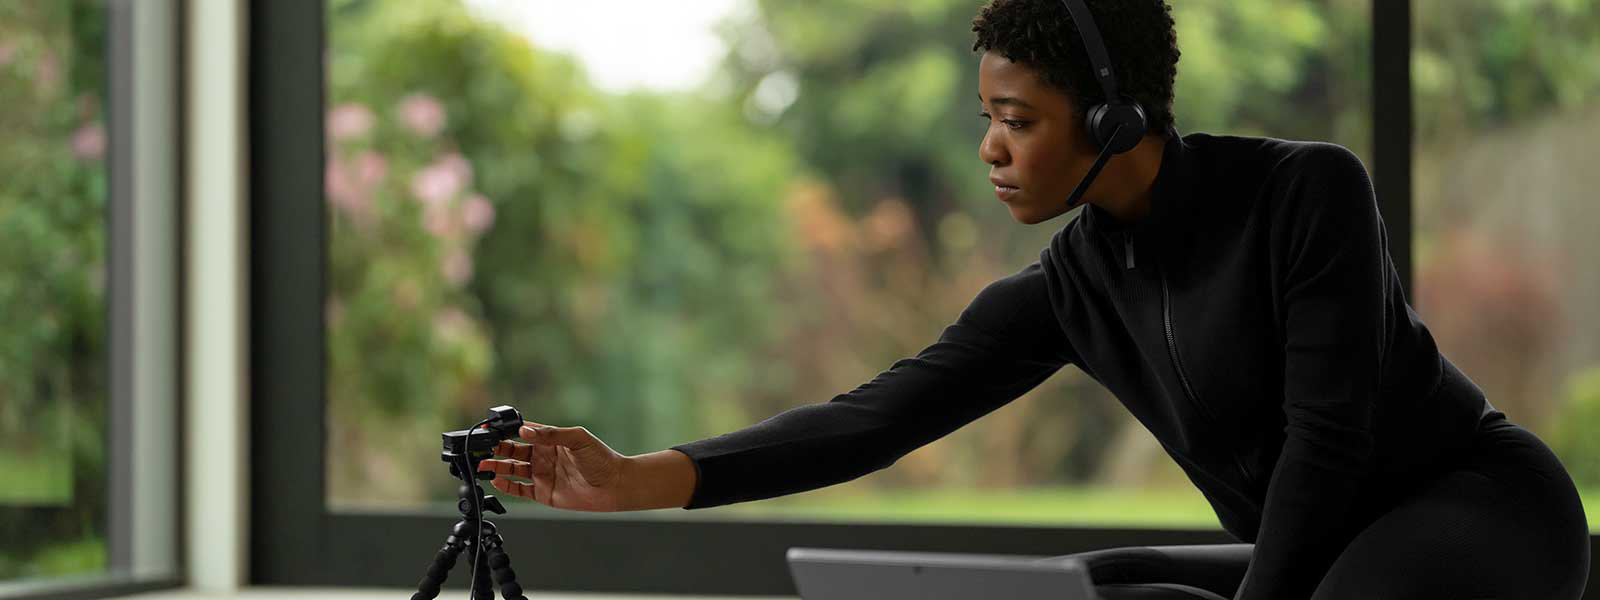 Una mujer que lleva puestos unos audífonos Microsoft Wireless headset ajusta una cámara Microsoft Modern Webcam